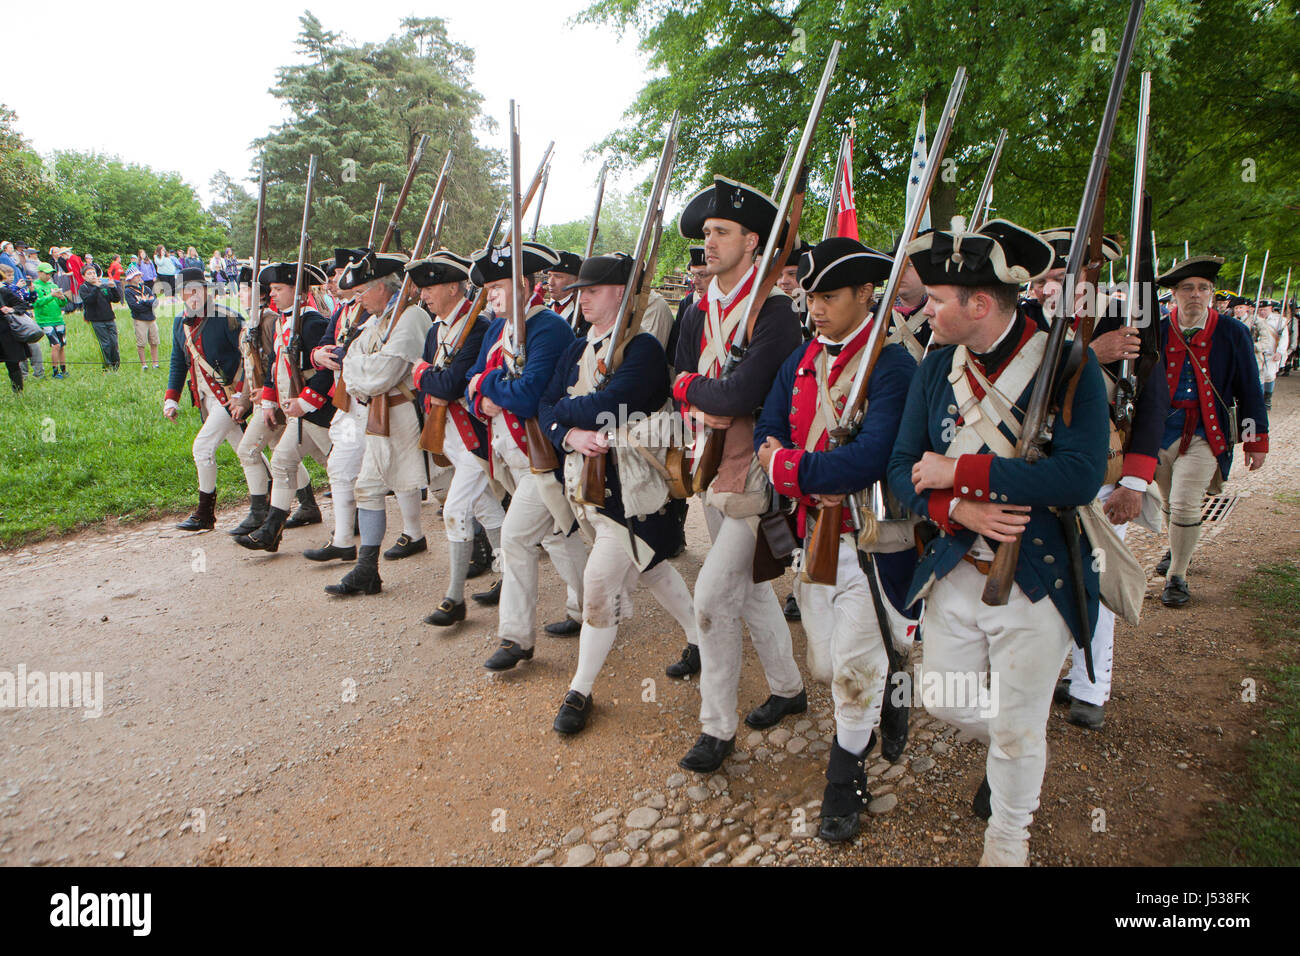 Des soldats américains dans la guerre d'Indépendance américaine reenactment - Virginia USA Banque D'Images